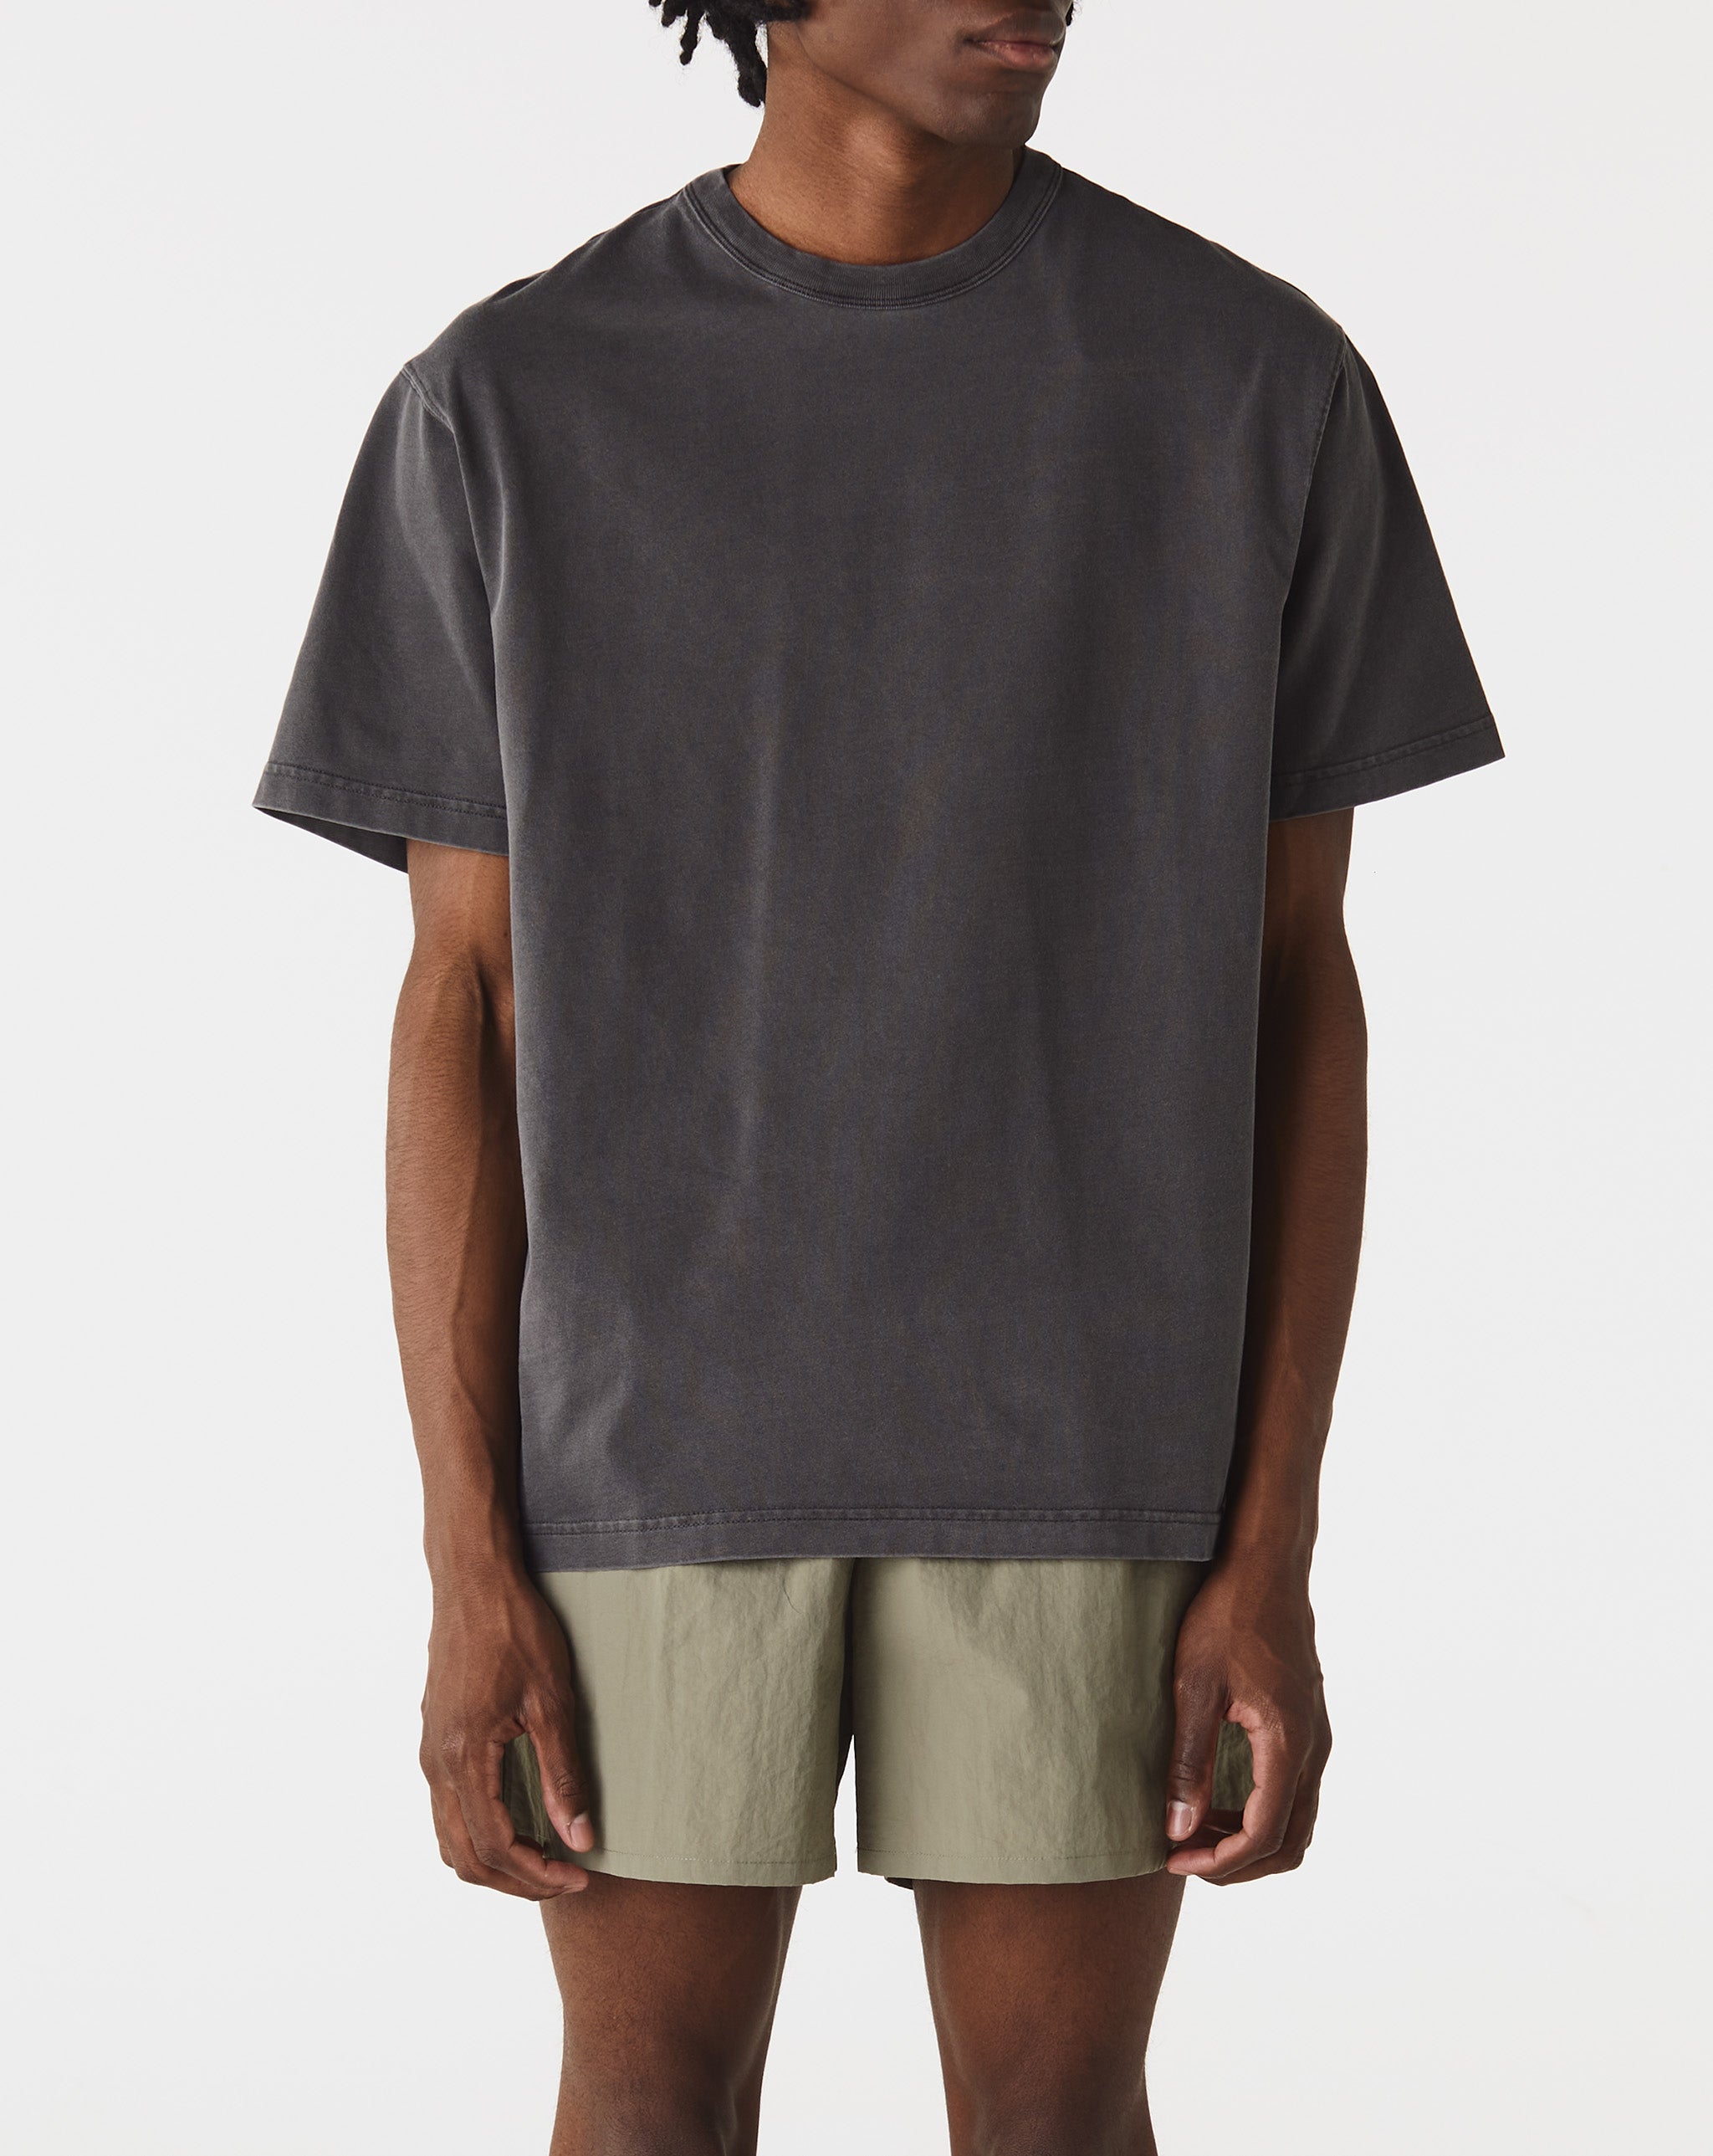 Carhartt WIP Taos T-Shirt  - Cheap Urlfreeze Jordan outlet